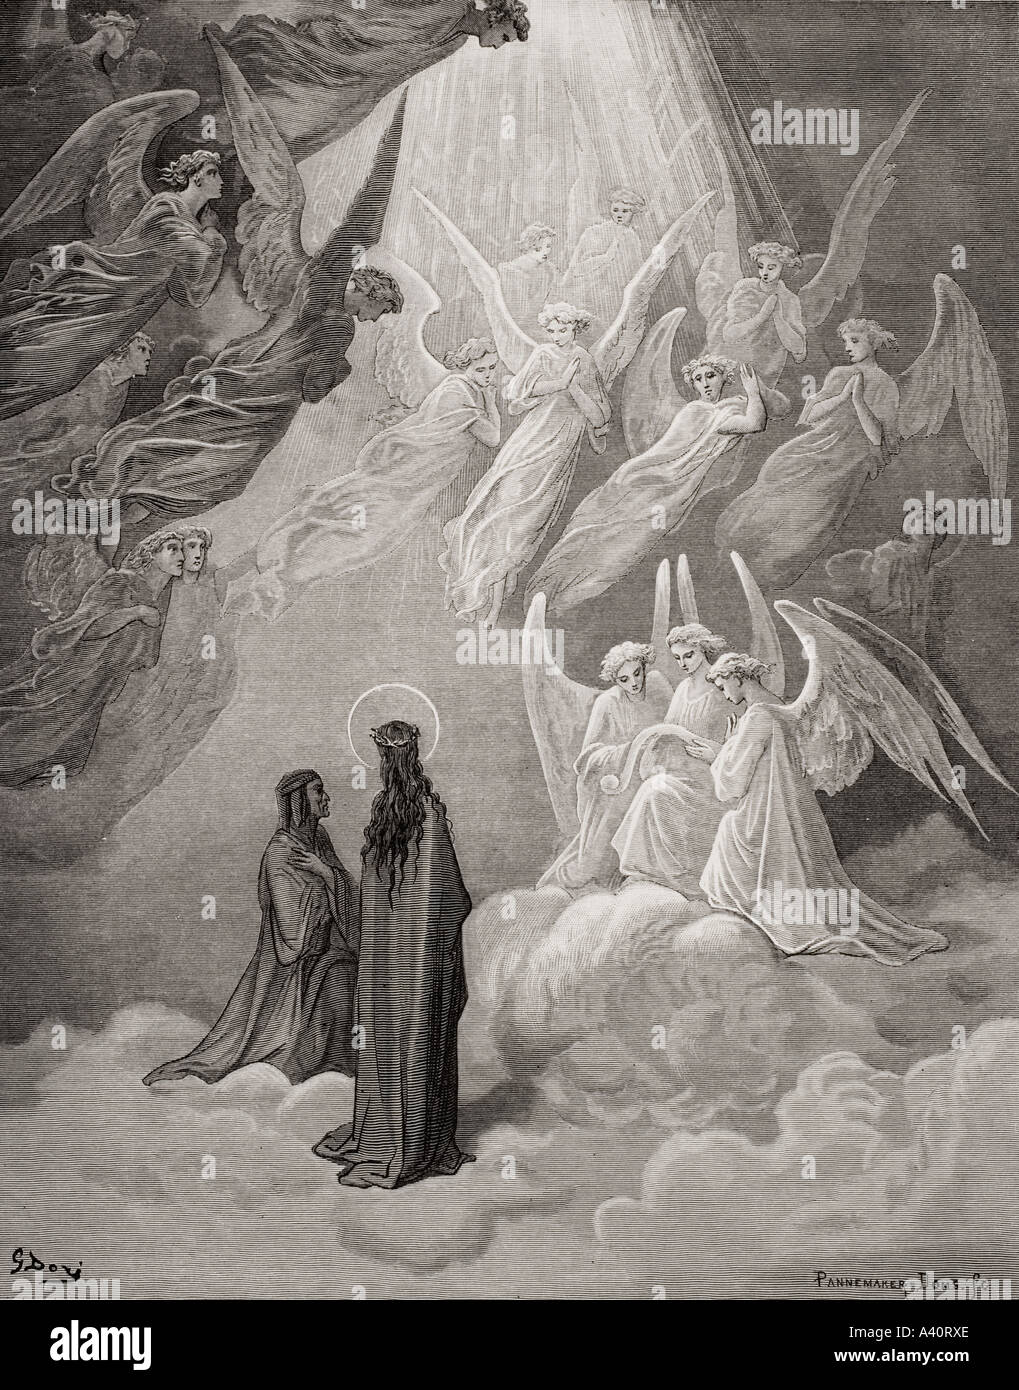 Abbildung für Paradiso Dante Alighieri, Canto XX, Zeilen 10 bis 12, von Gustave Dore, 1832 - 1883. Französische Künstler und Illustrator. Stockfoto